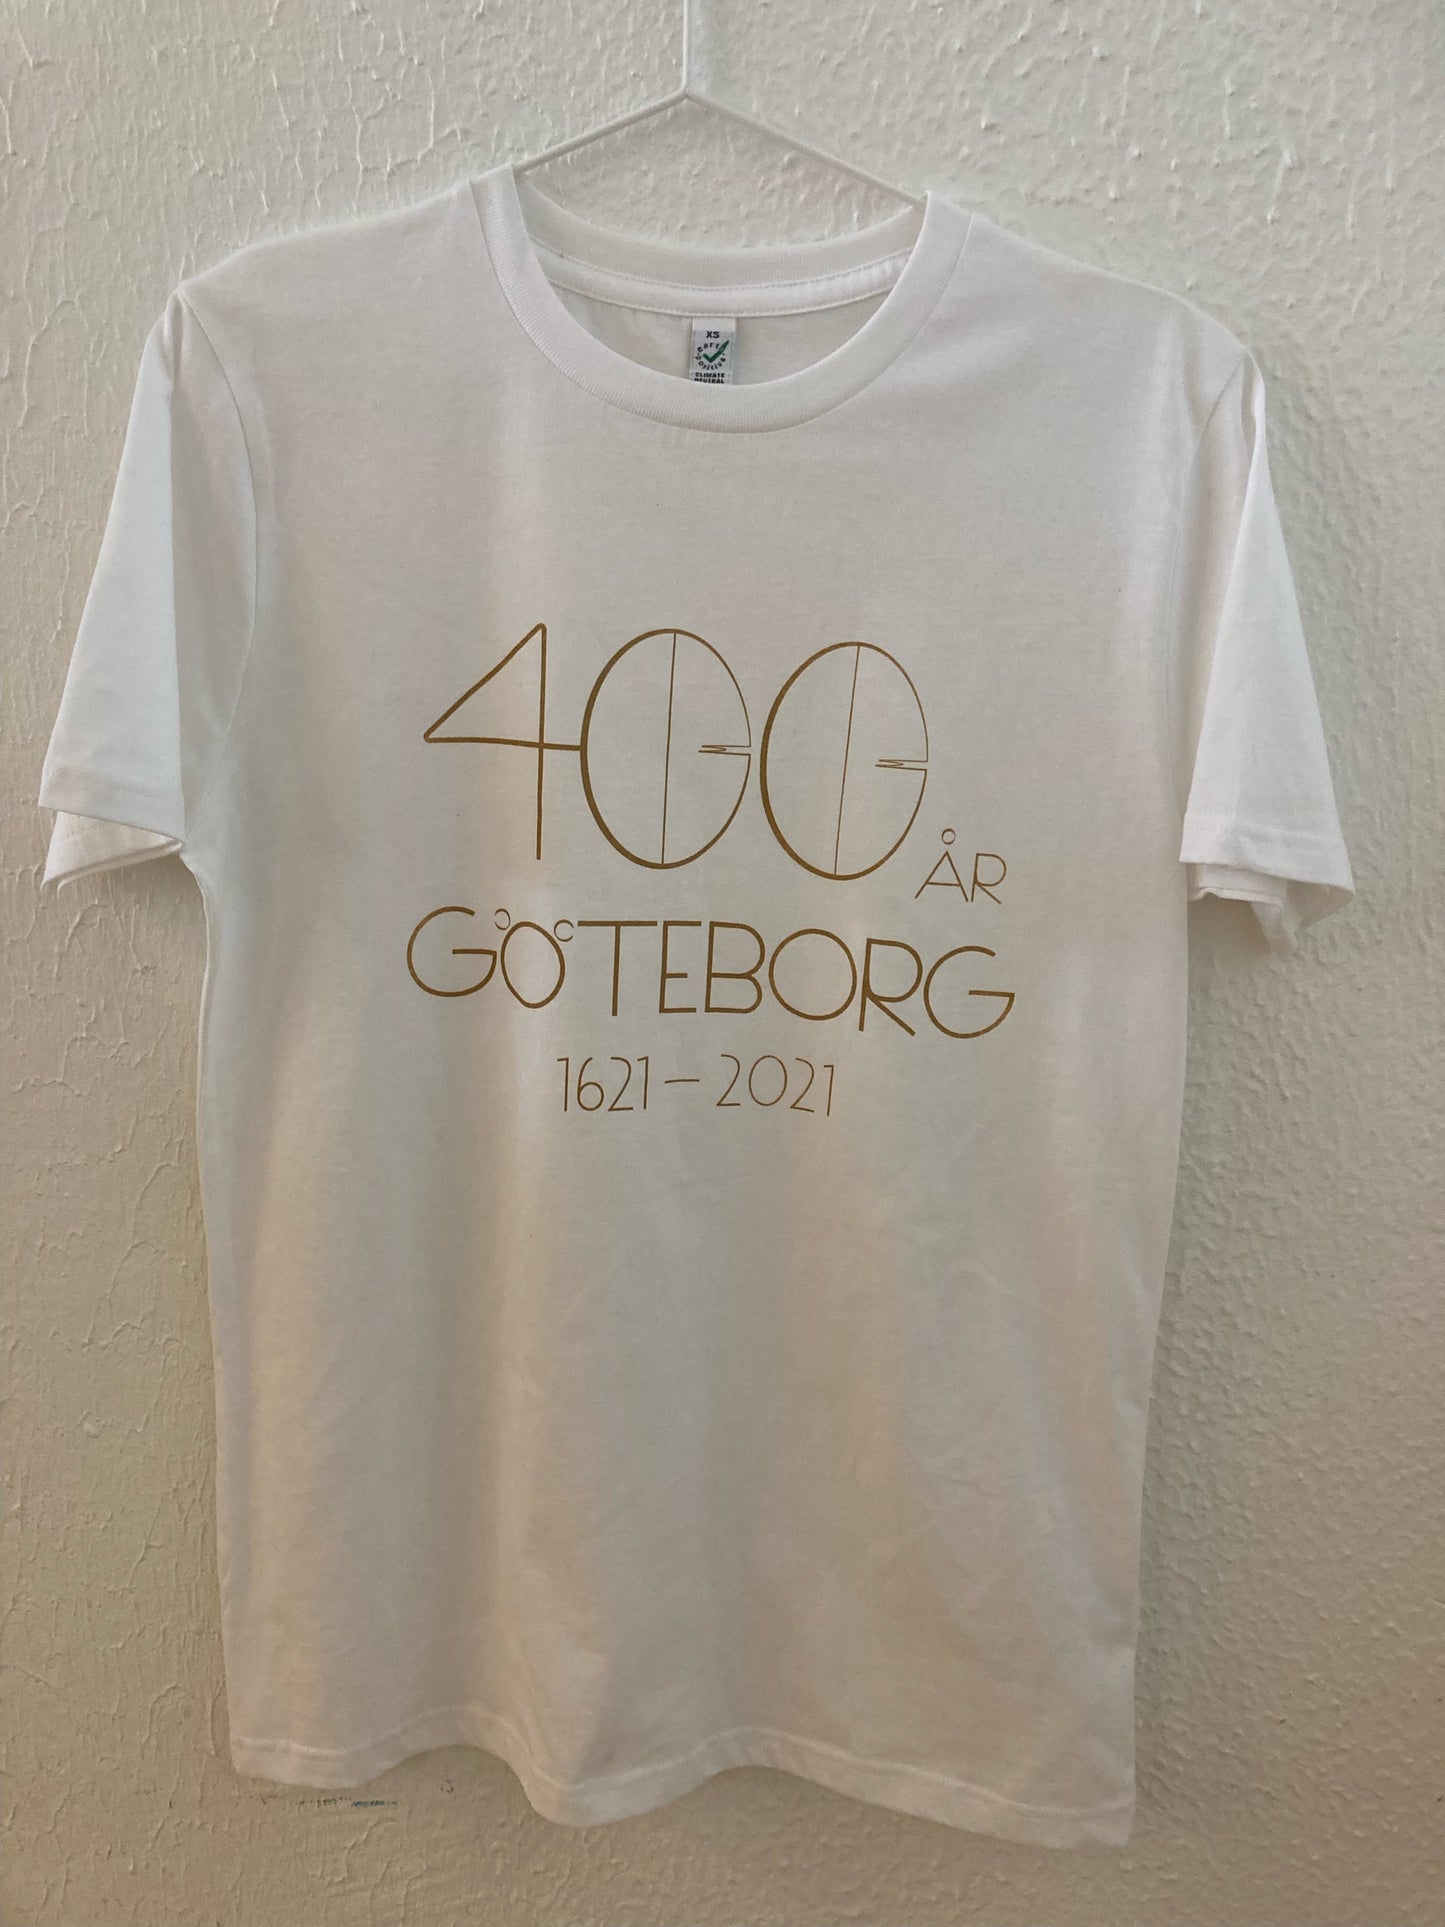 Göteborg 400 År T-shirt